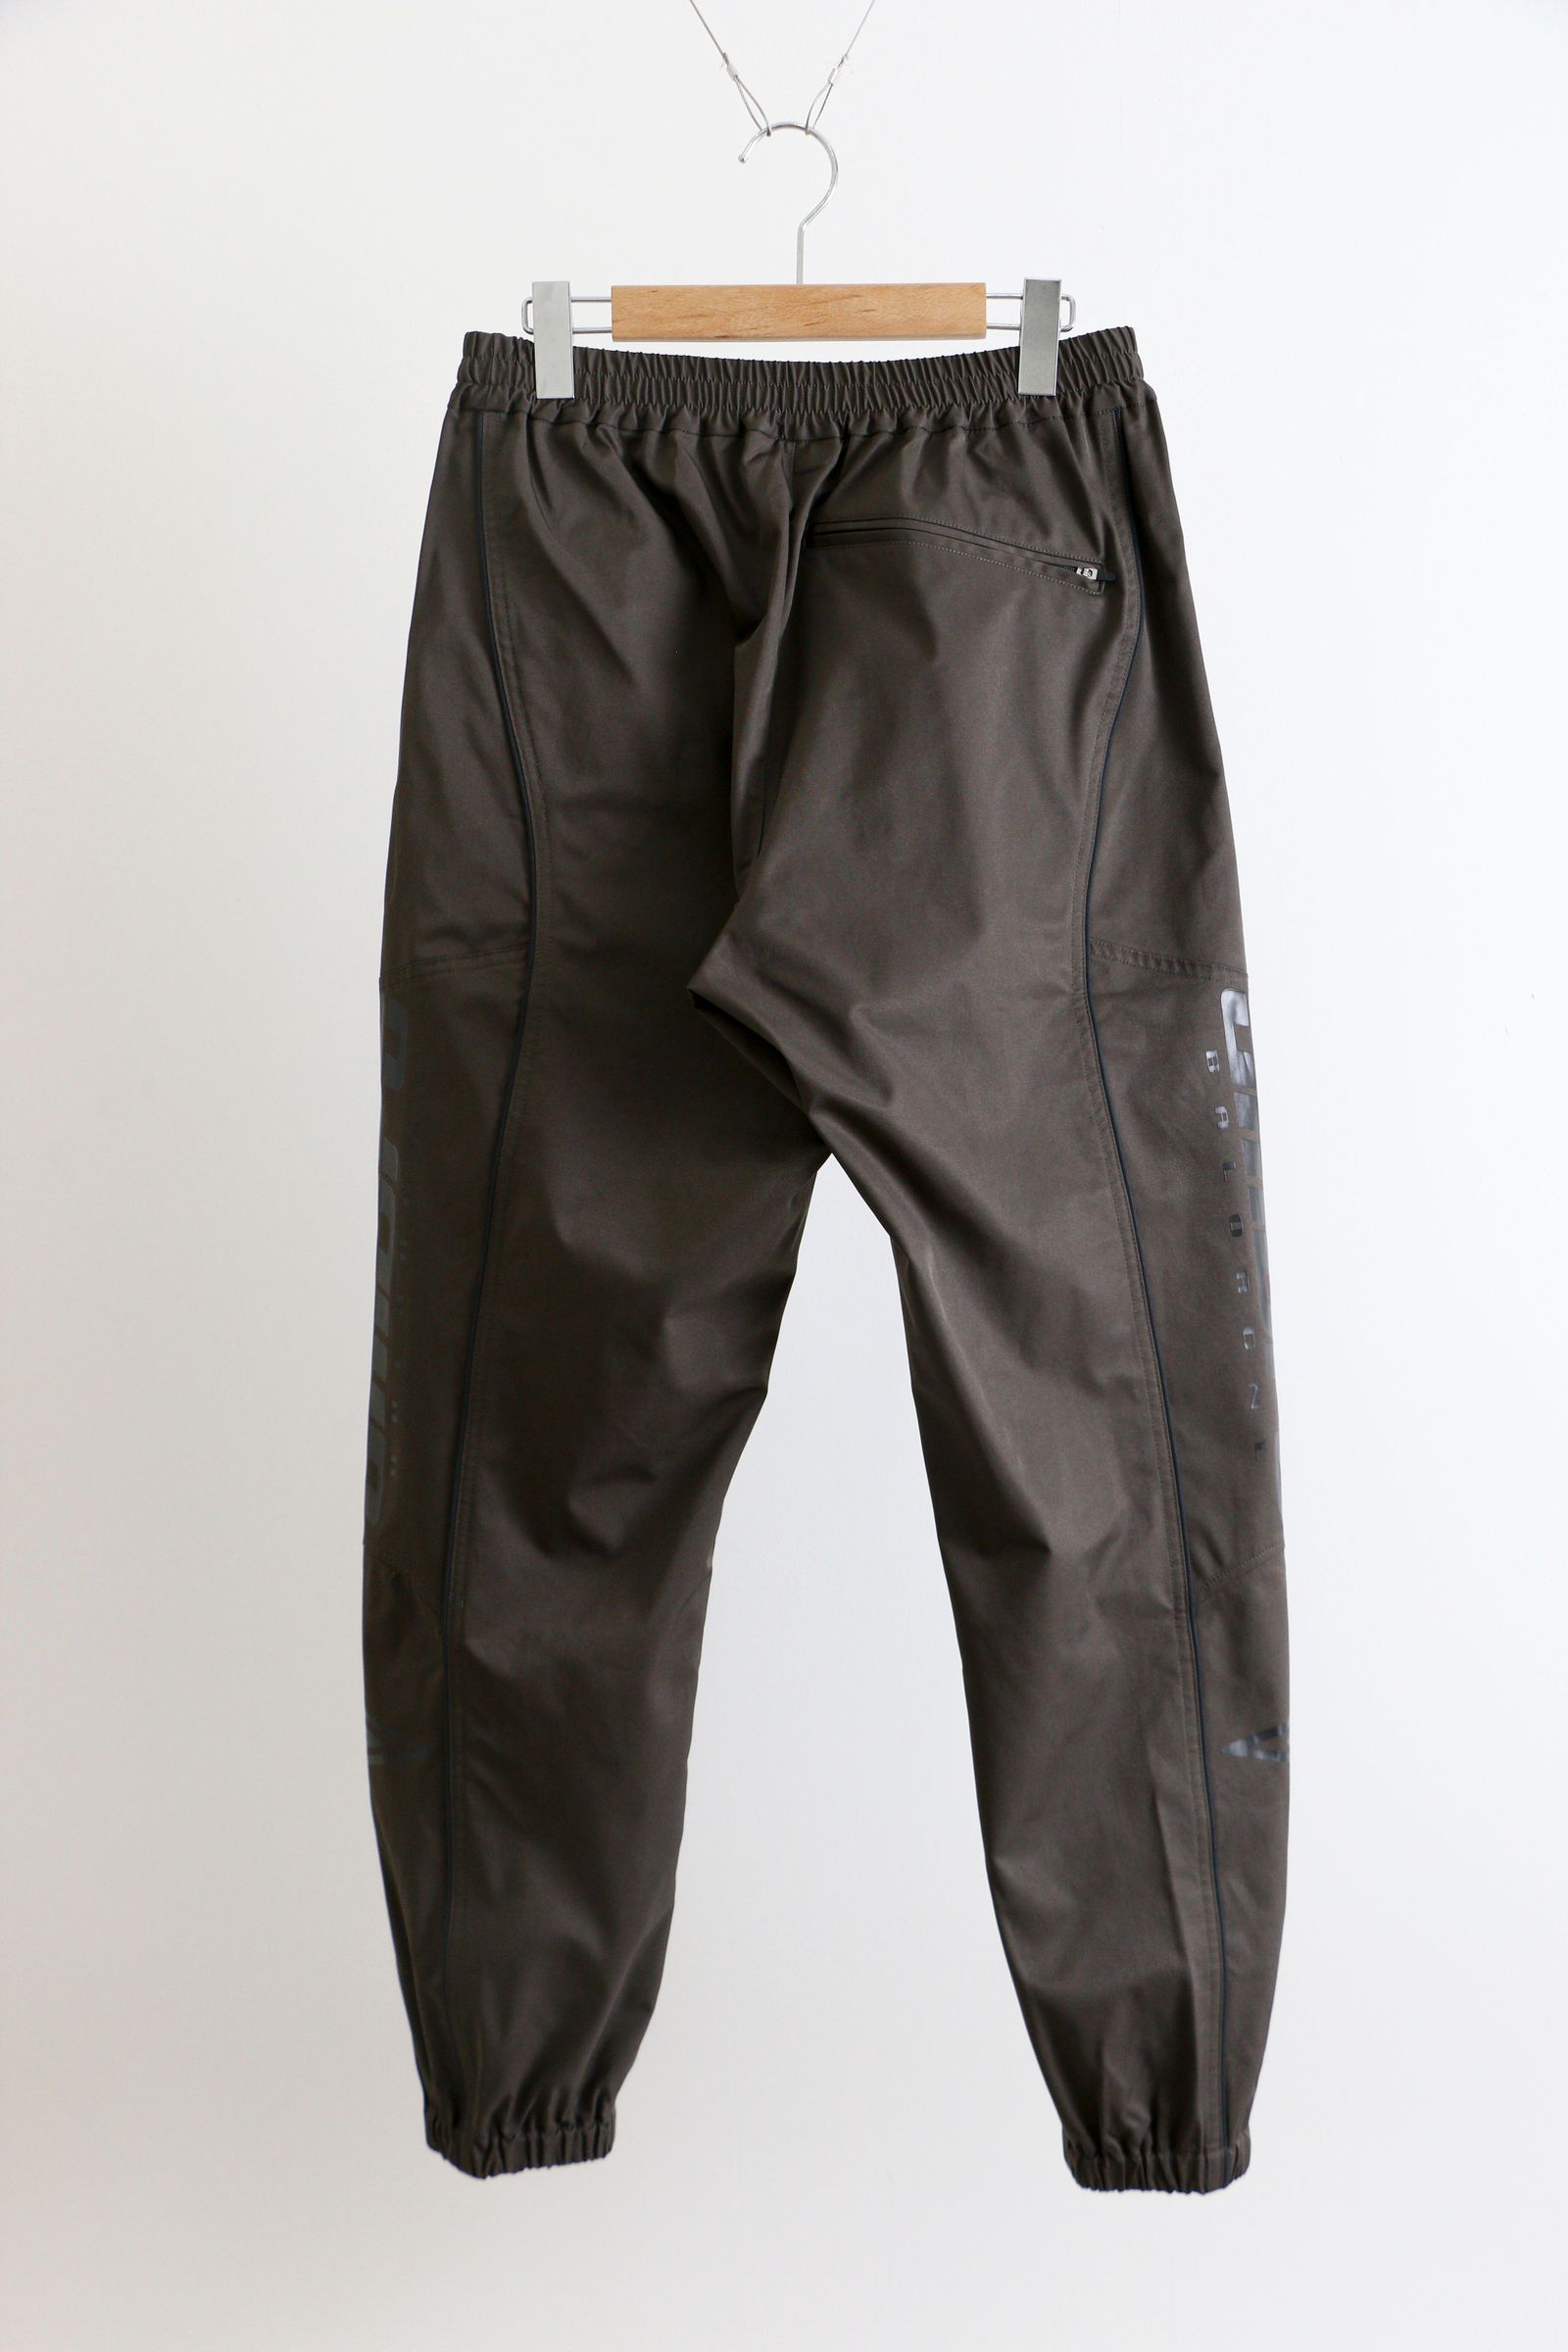 vintage 00s oakley nylon pants トラックパンツ